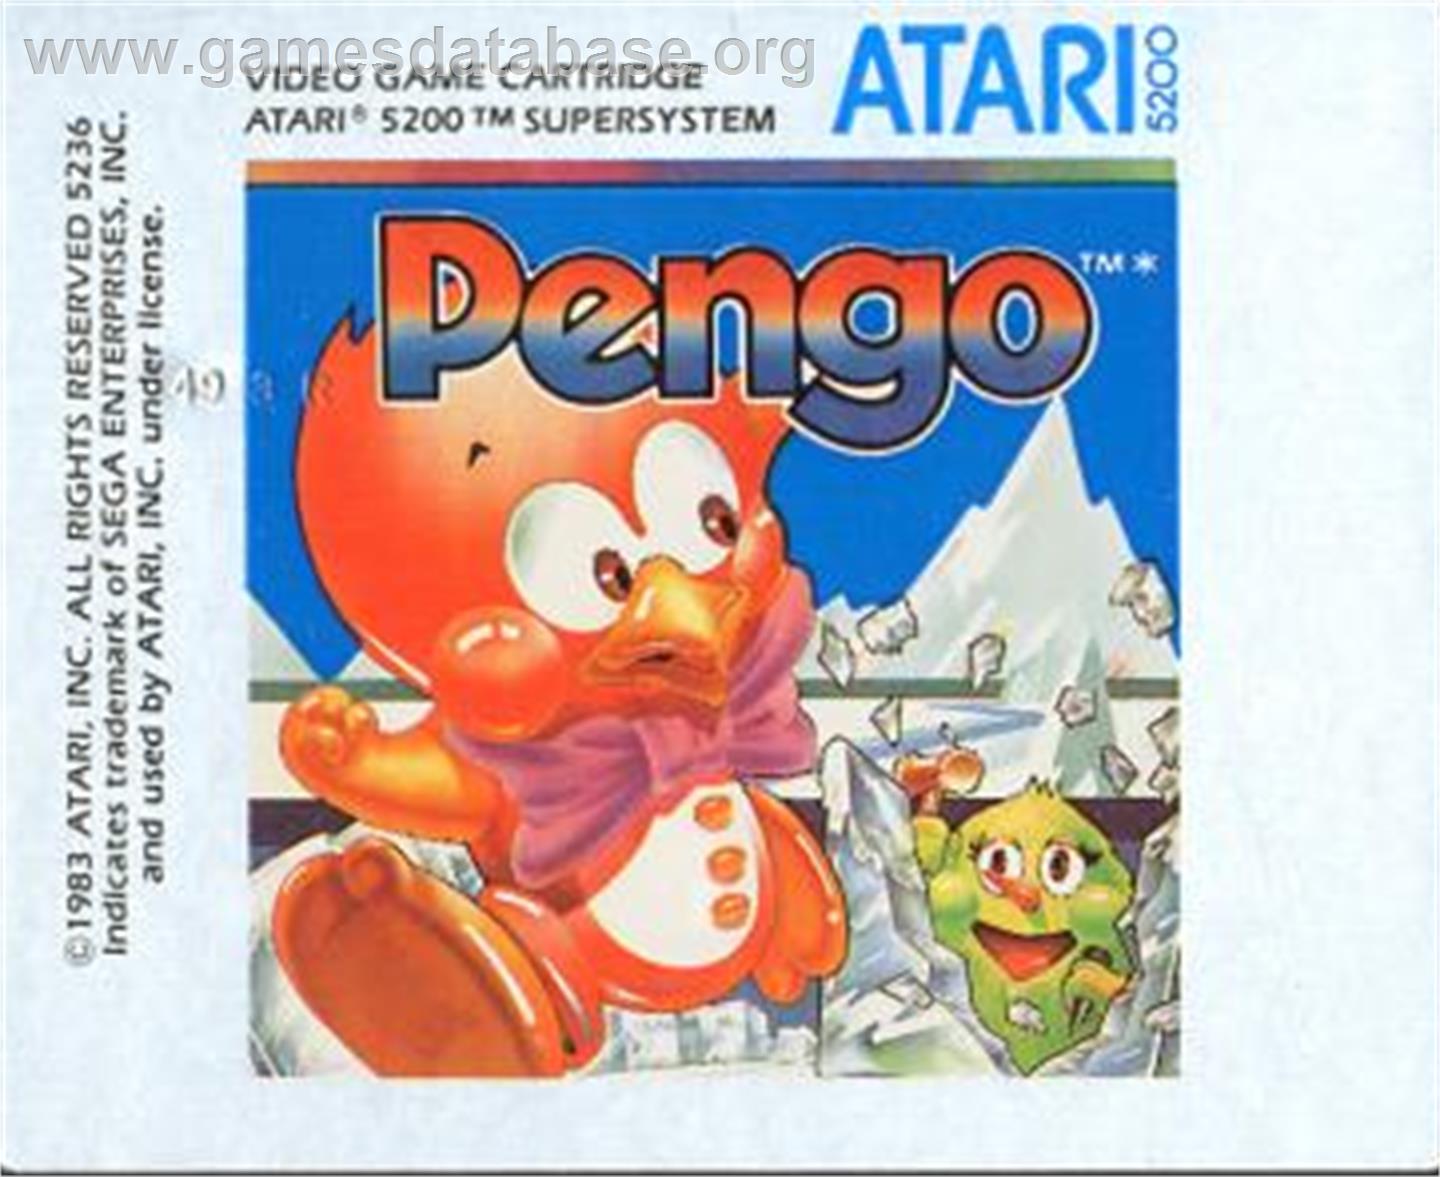 Pengo - Atari 5200 - Artwork - Cartridge Top